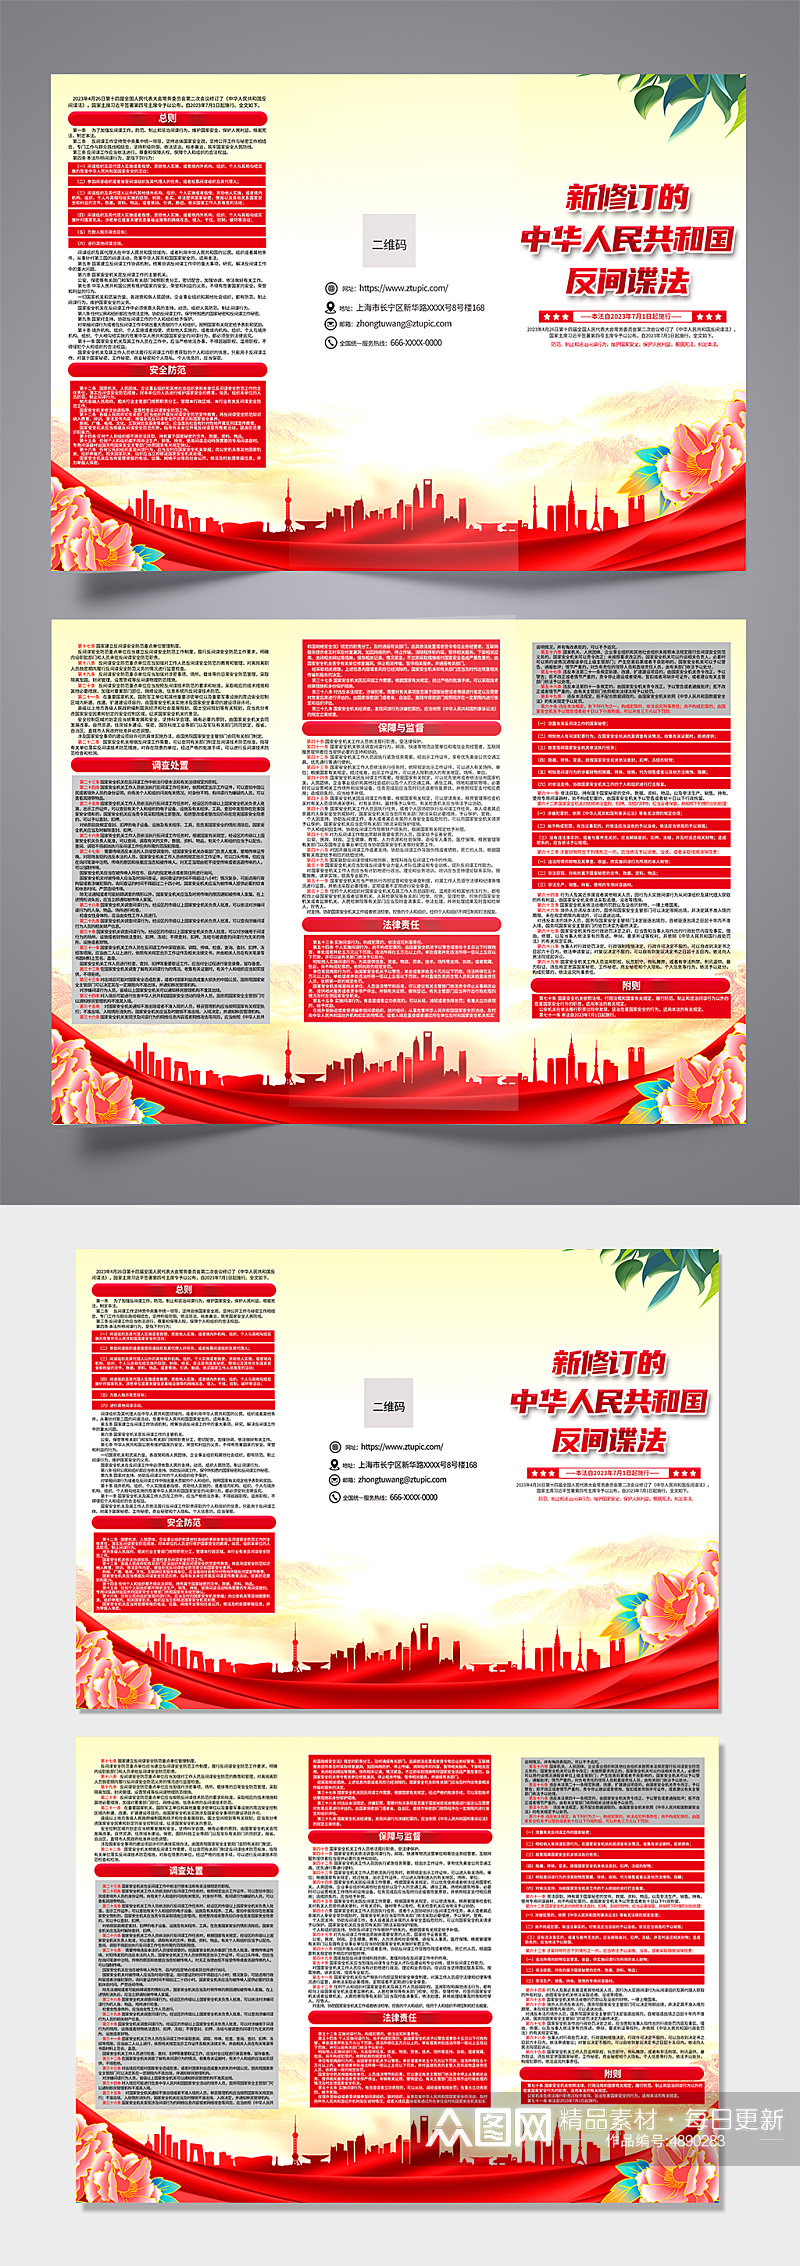 新修订的中华人民共和国反间谍法三折页素材